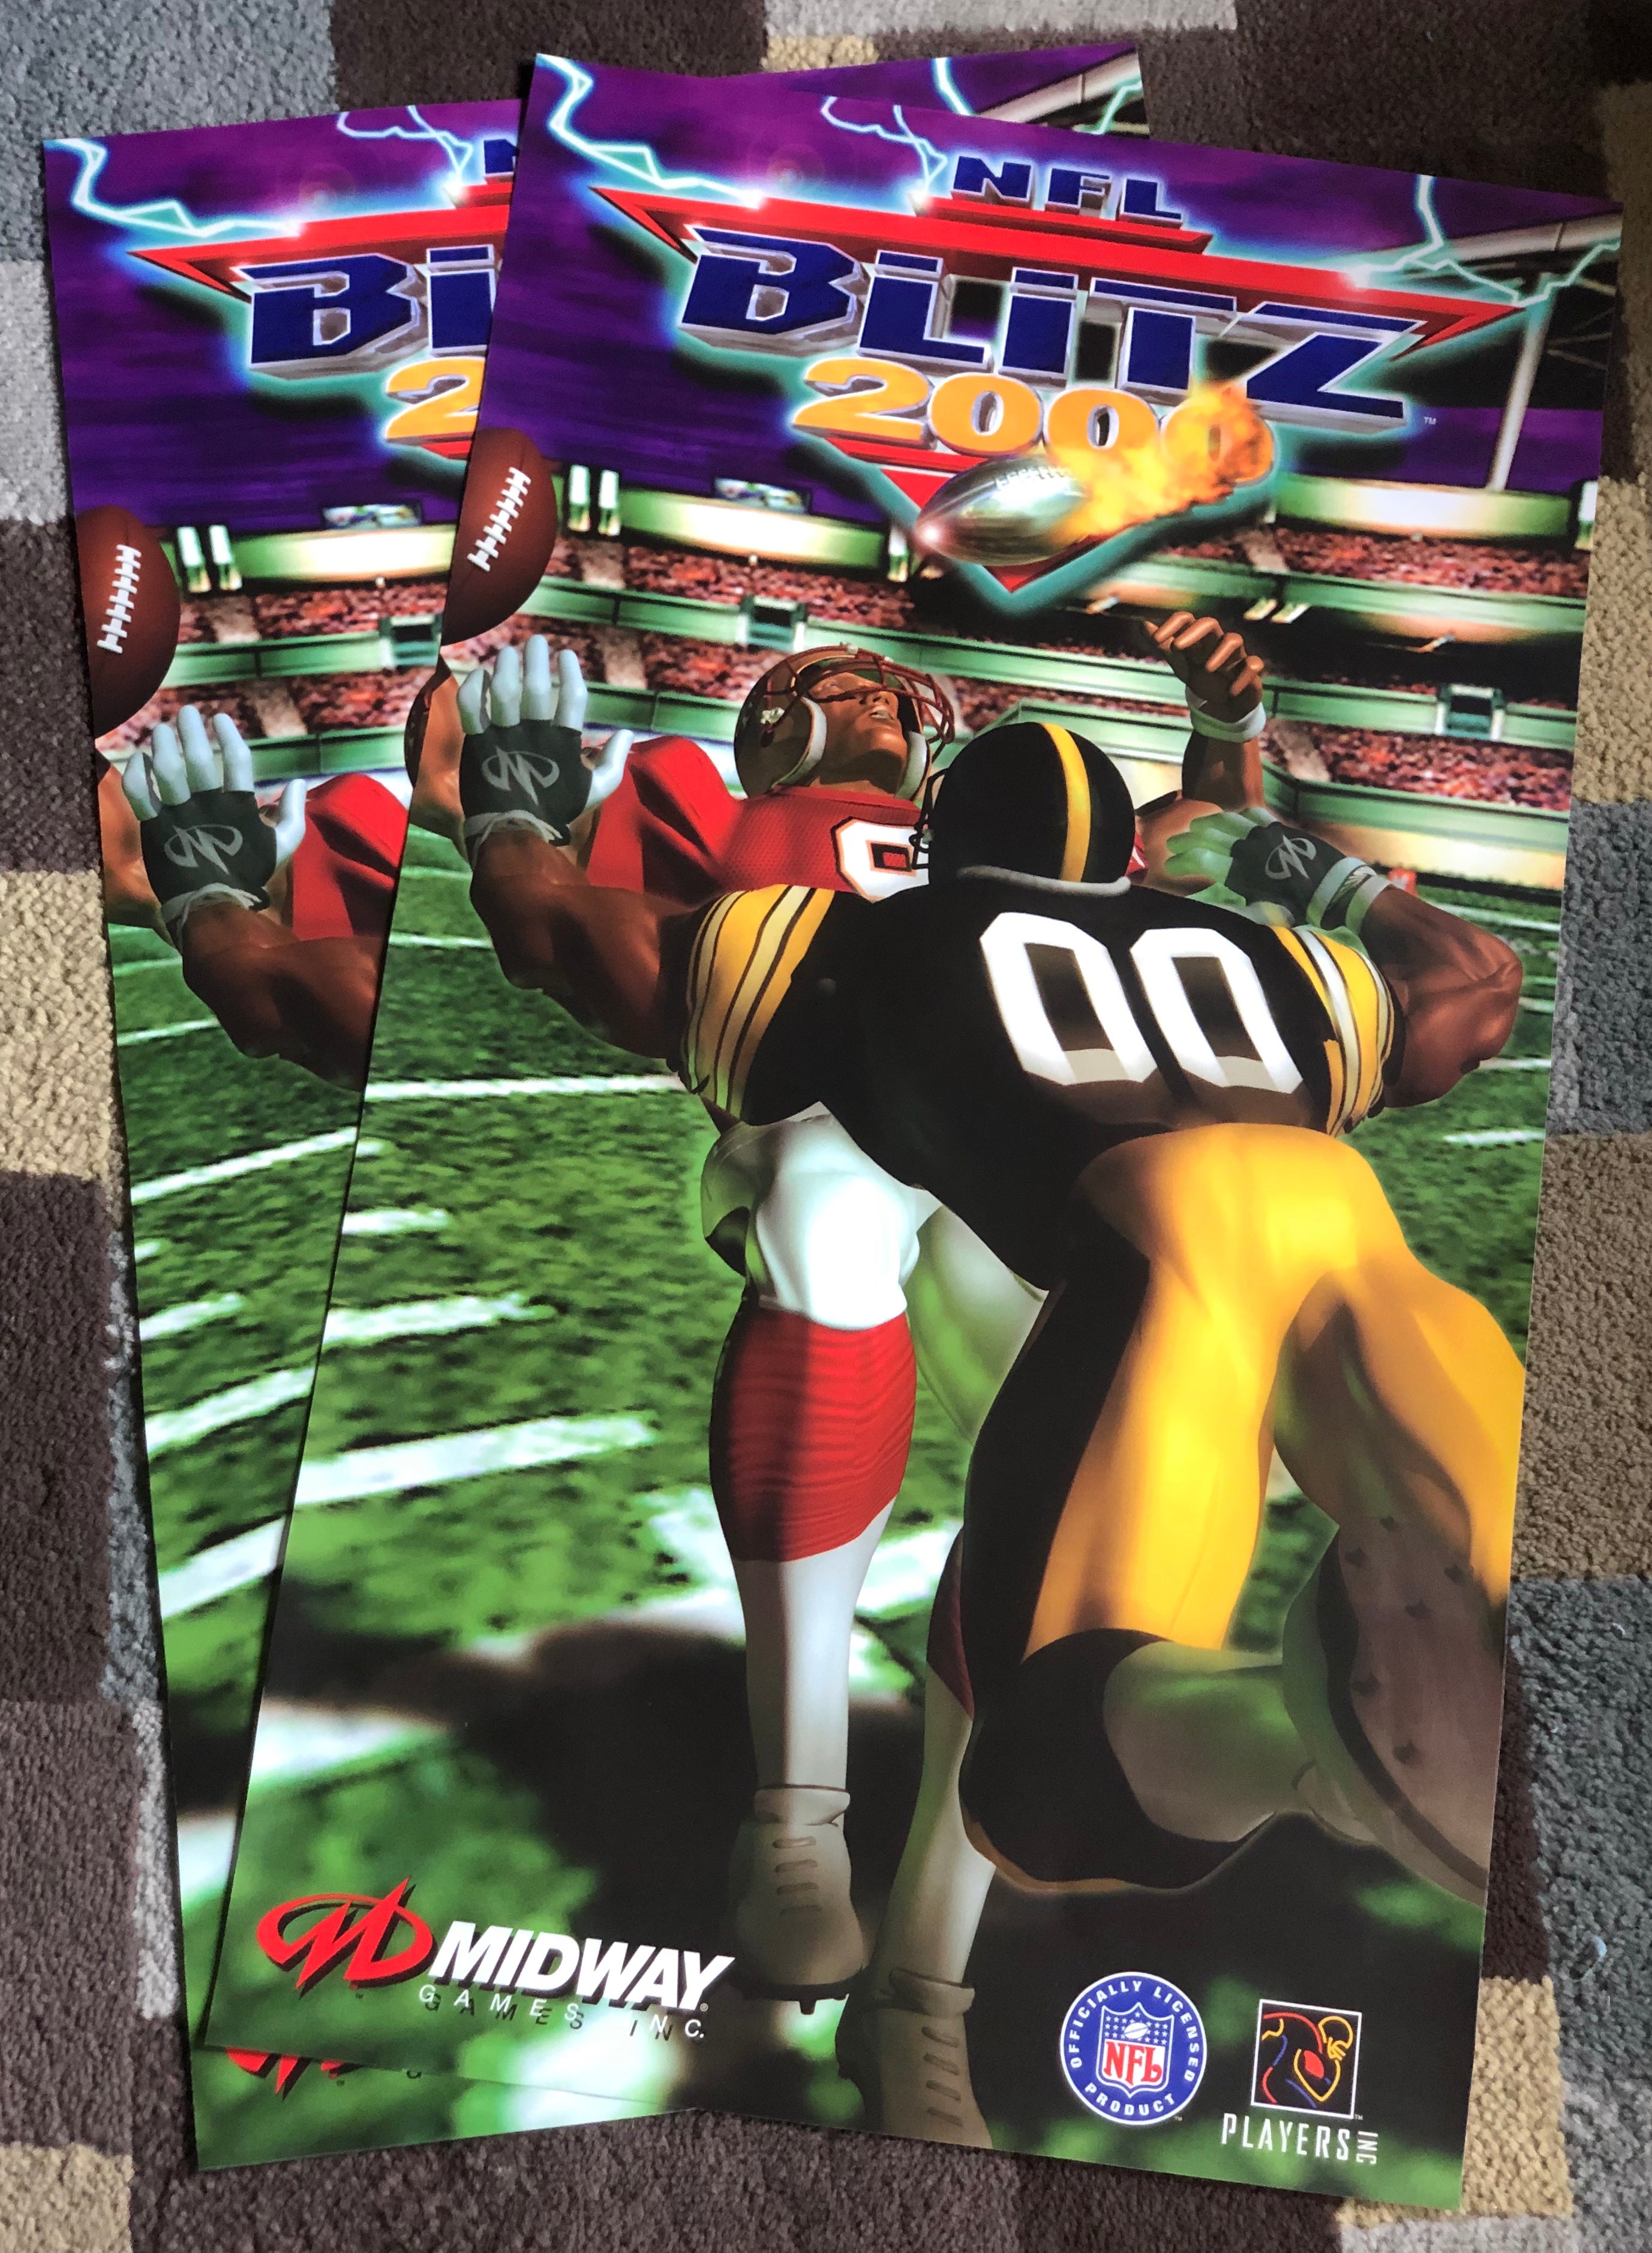 Arte lateral de conversión de NFL Blitz 2000